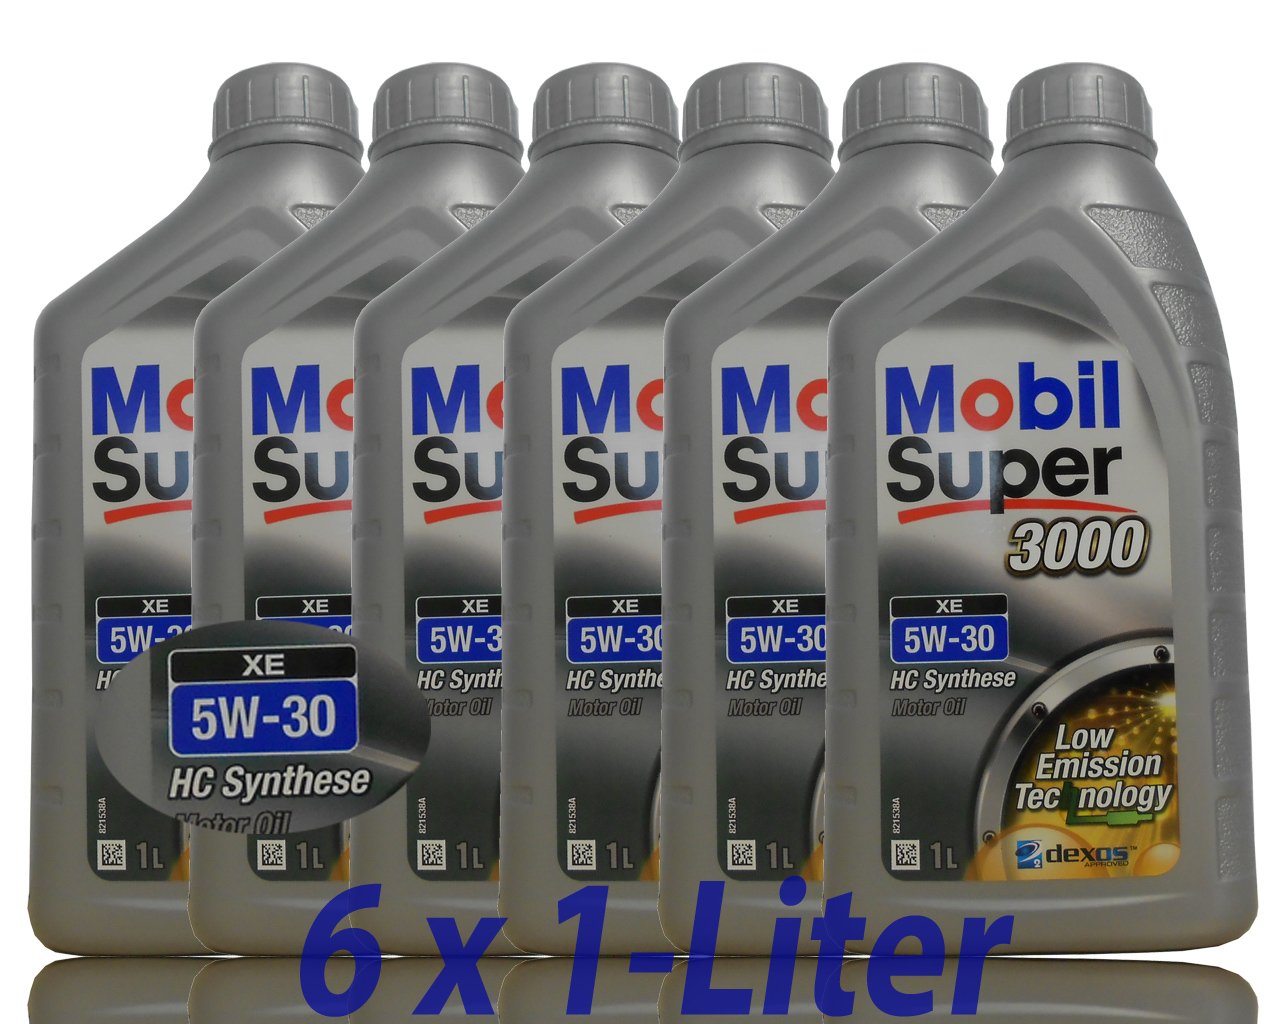 6x 1 L Liter Mobil Super™ 3000 XE 5W-30 Motor-Öl von Mobil